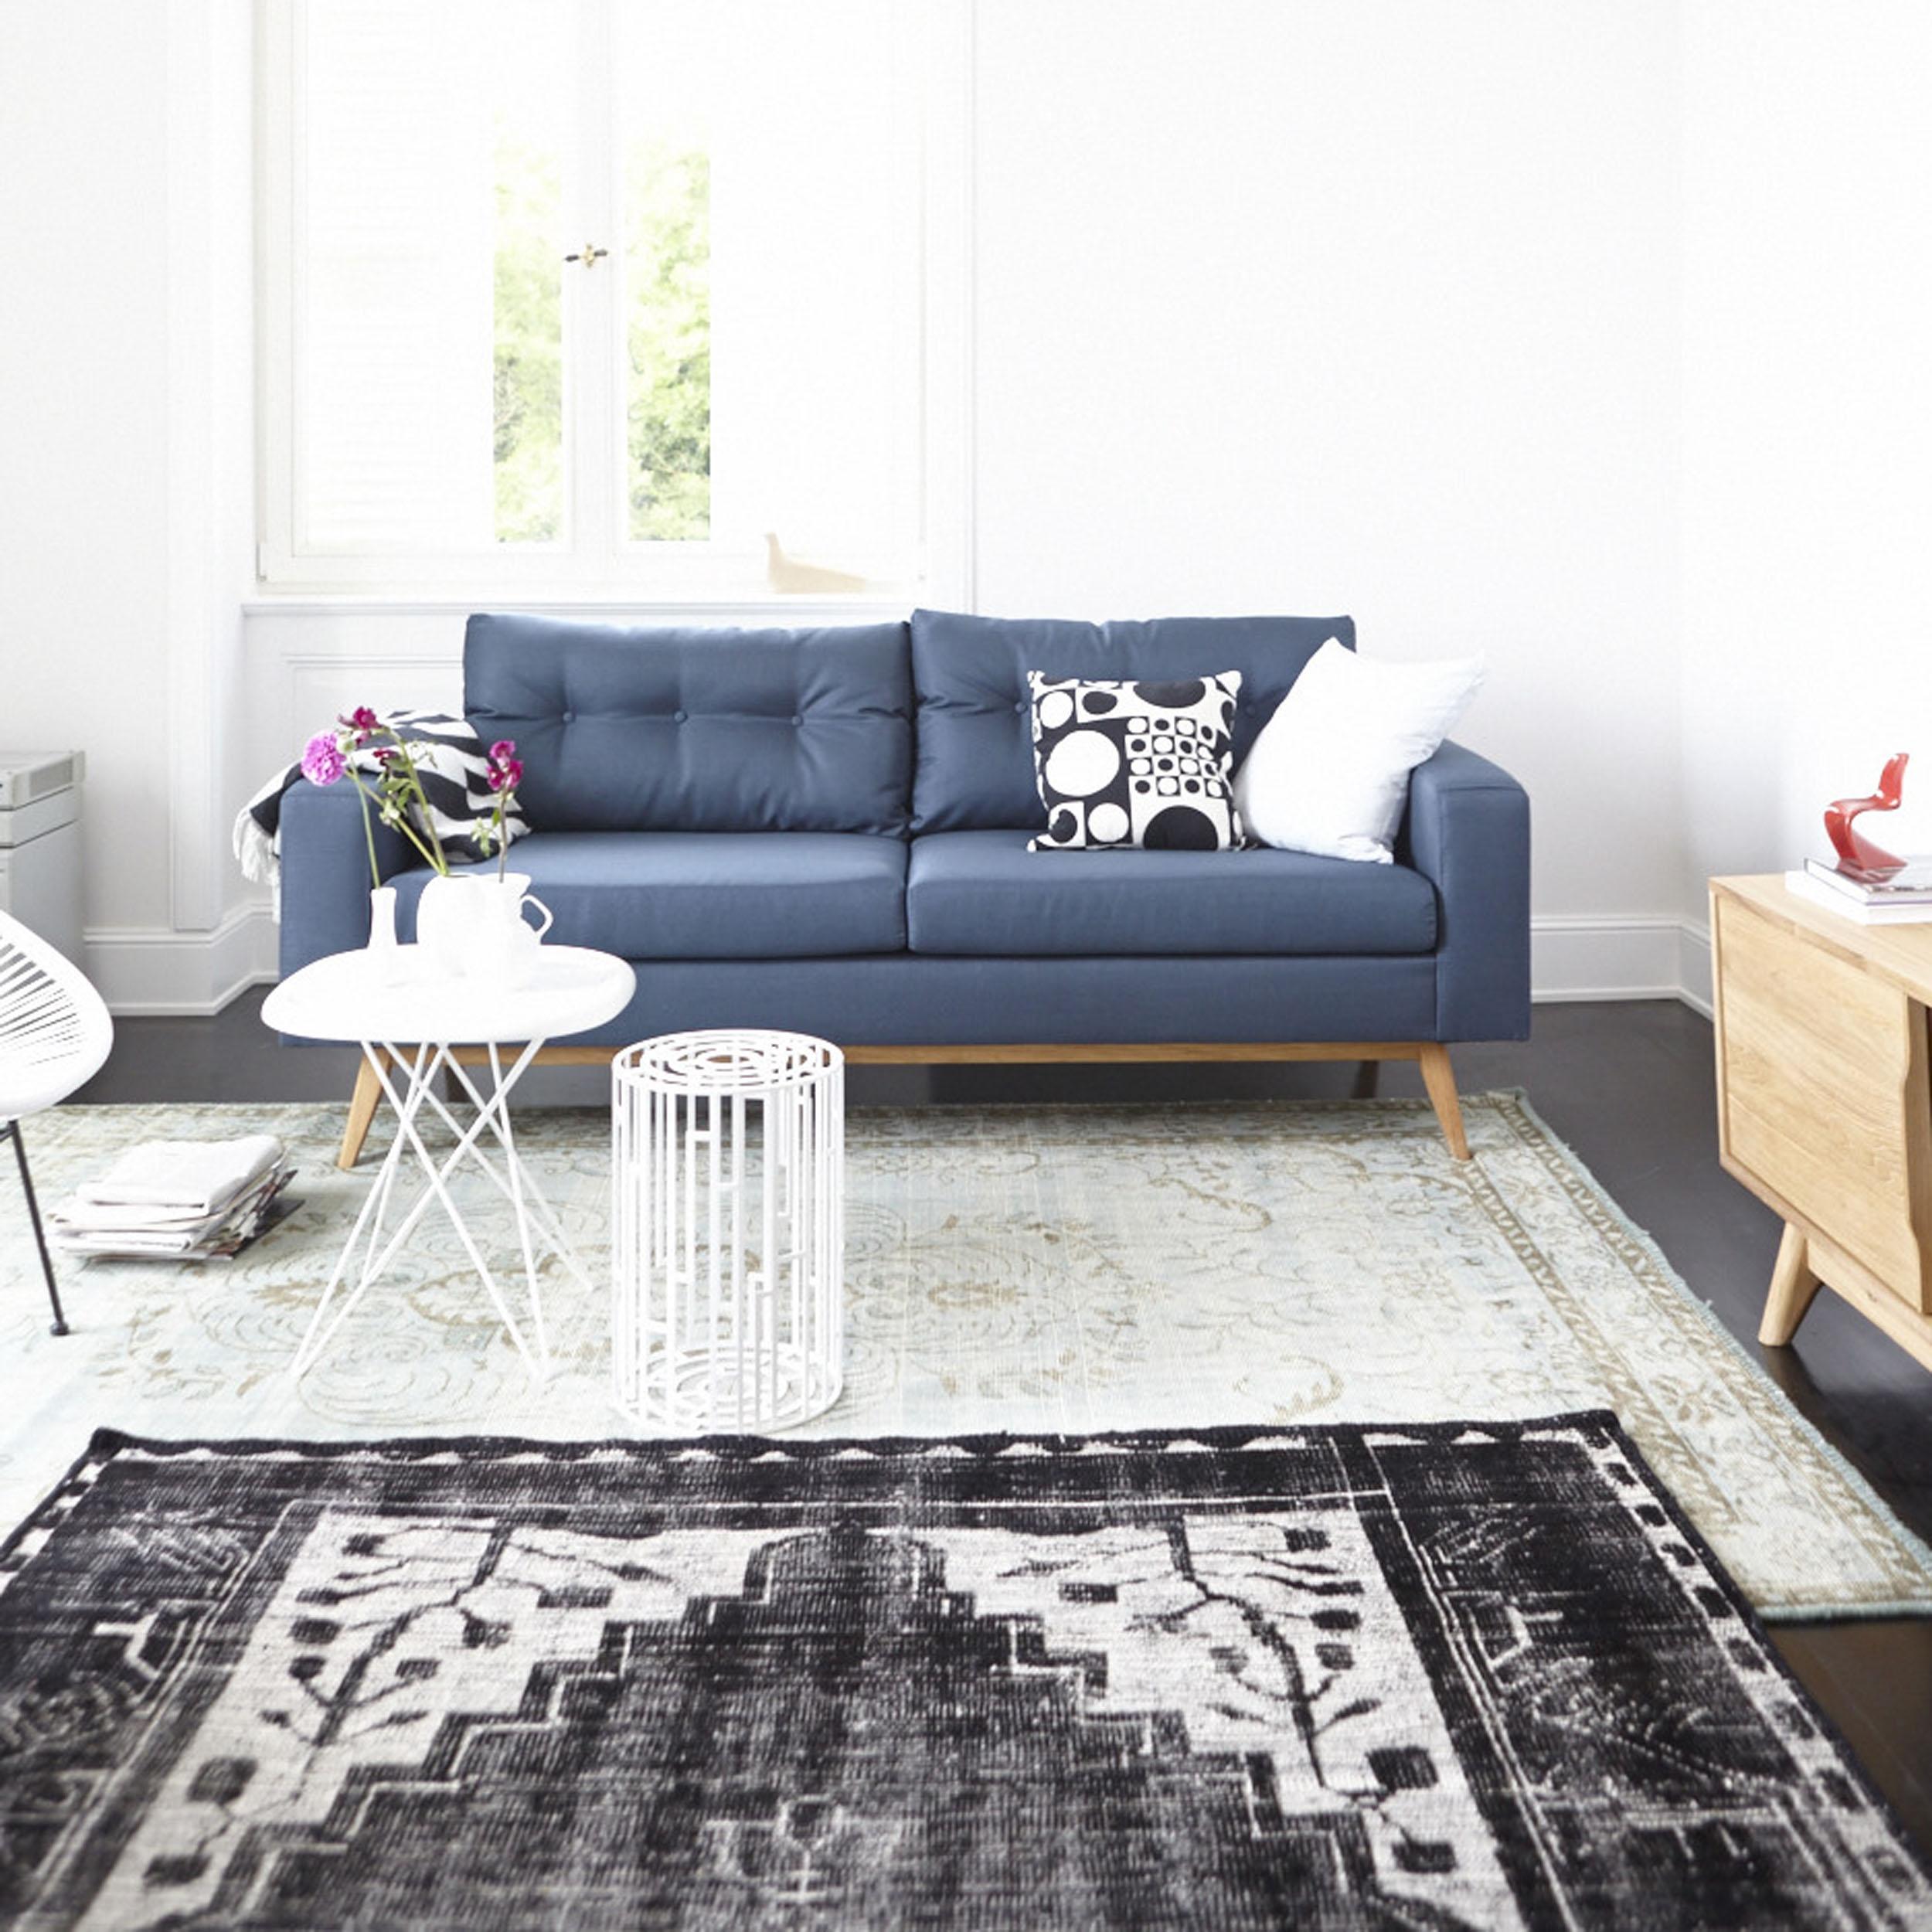 Sofa im Retro-Design bei ikarus #wohnzimmer #sofa ©ikarus...design